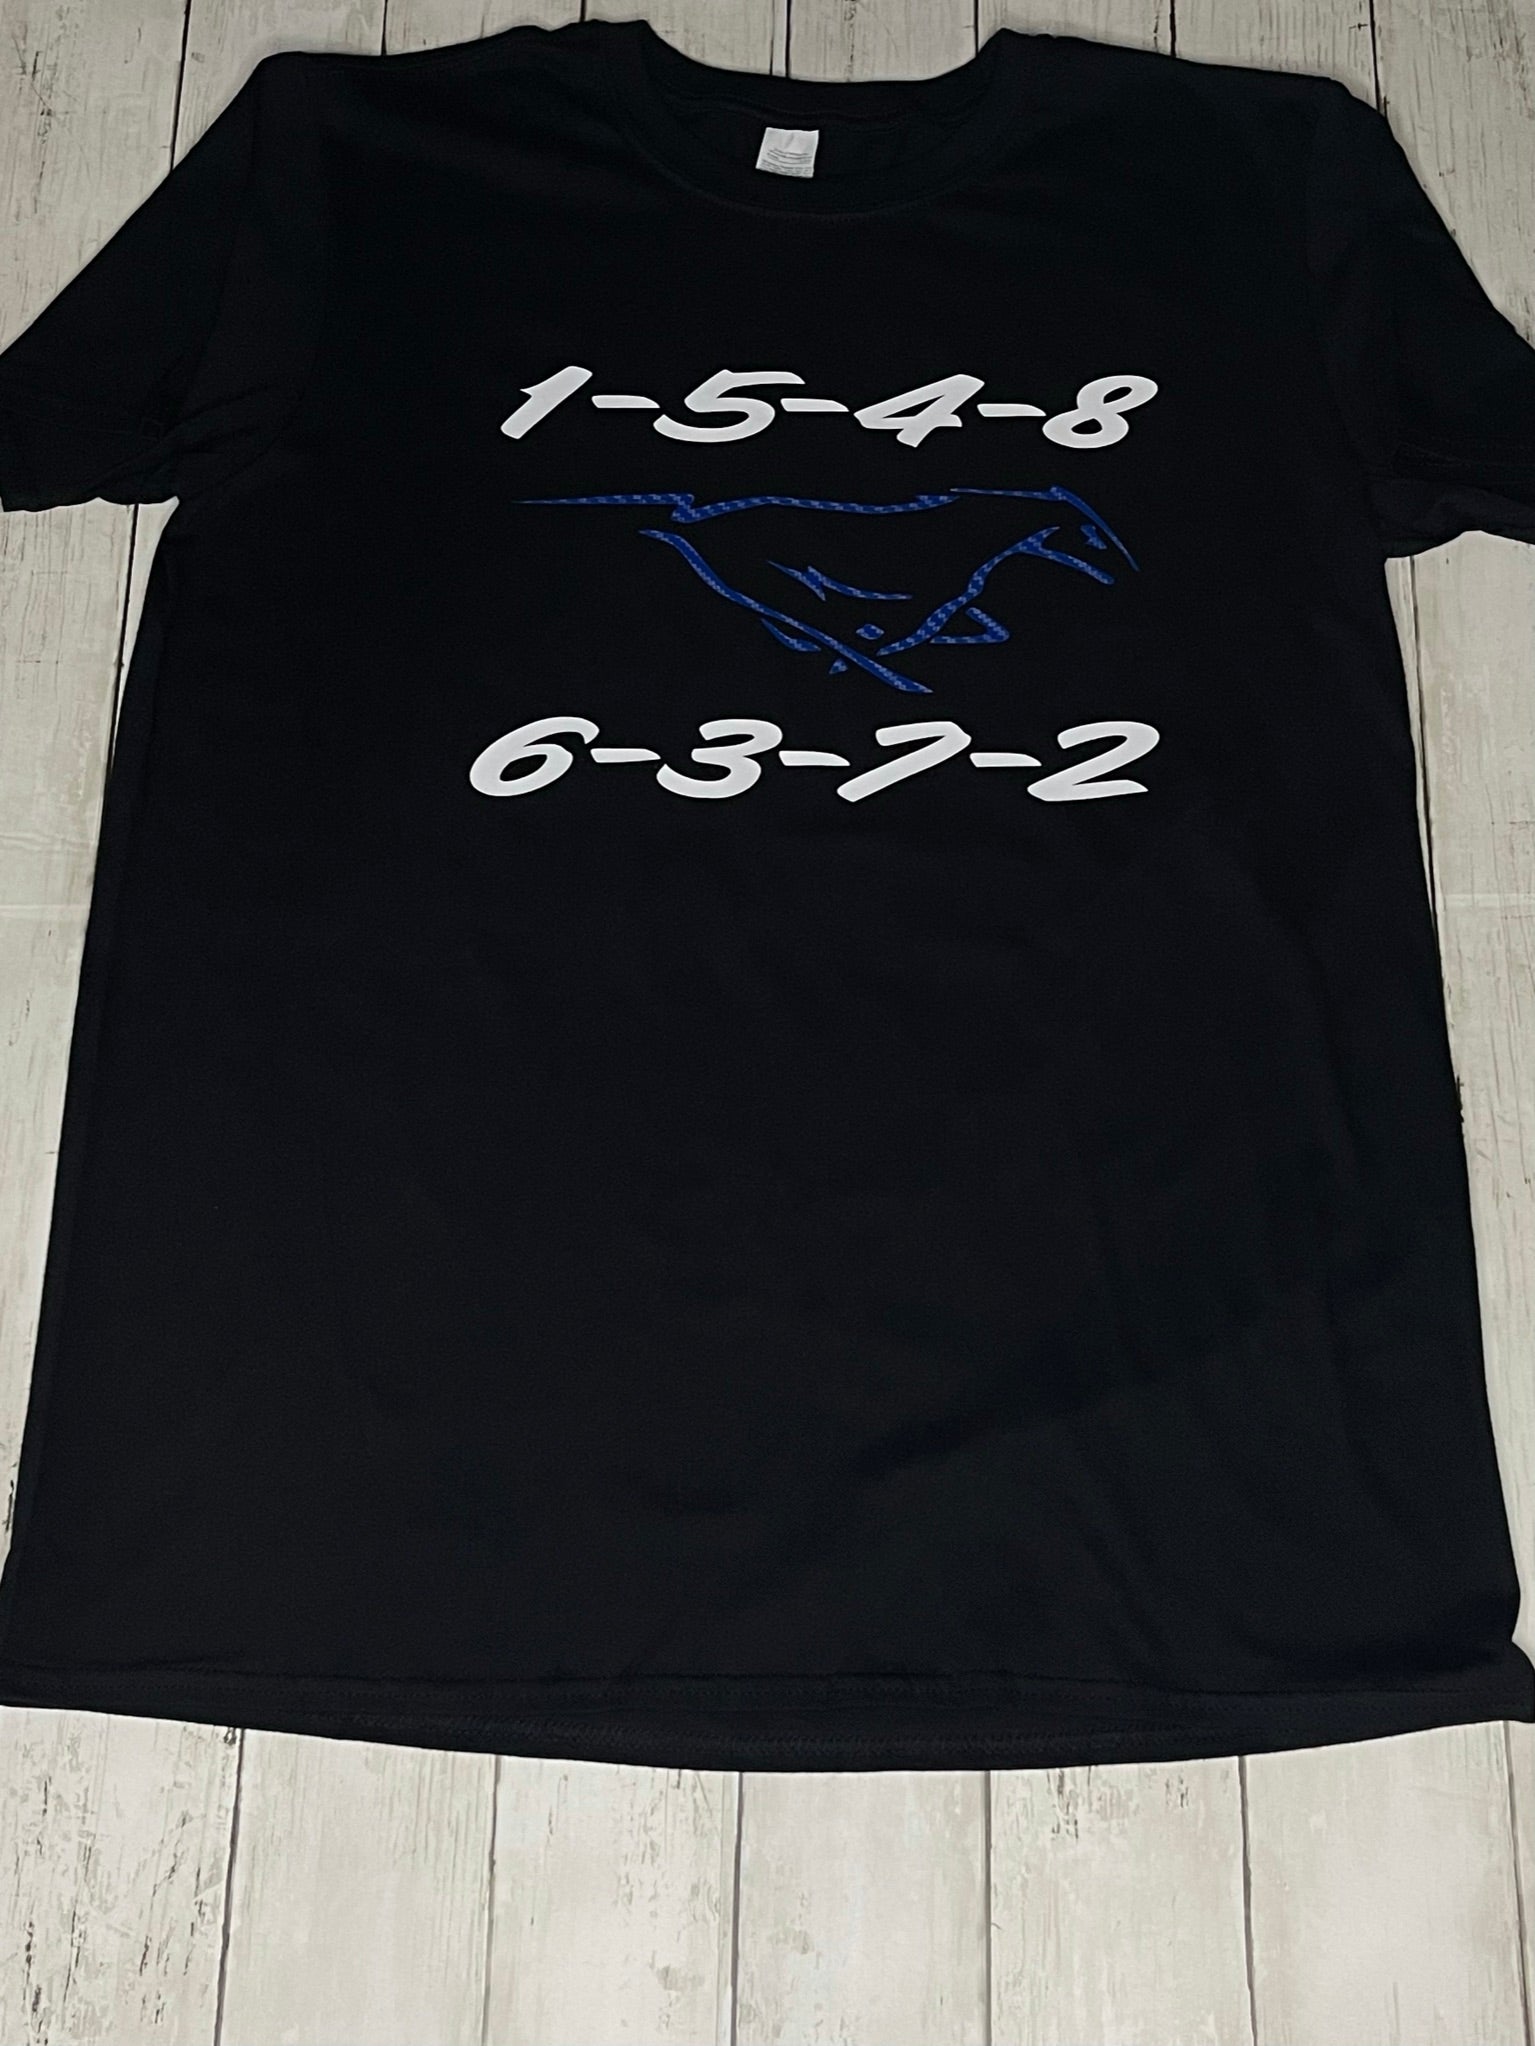 order Shirt – Tee Firing Mustang Coyote Werx t-Shirt